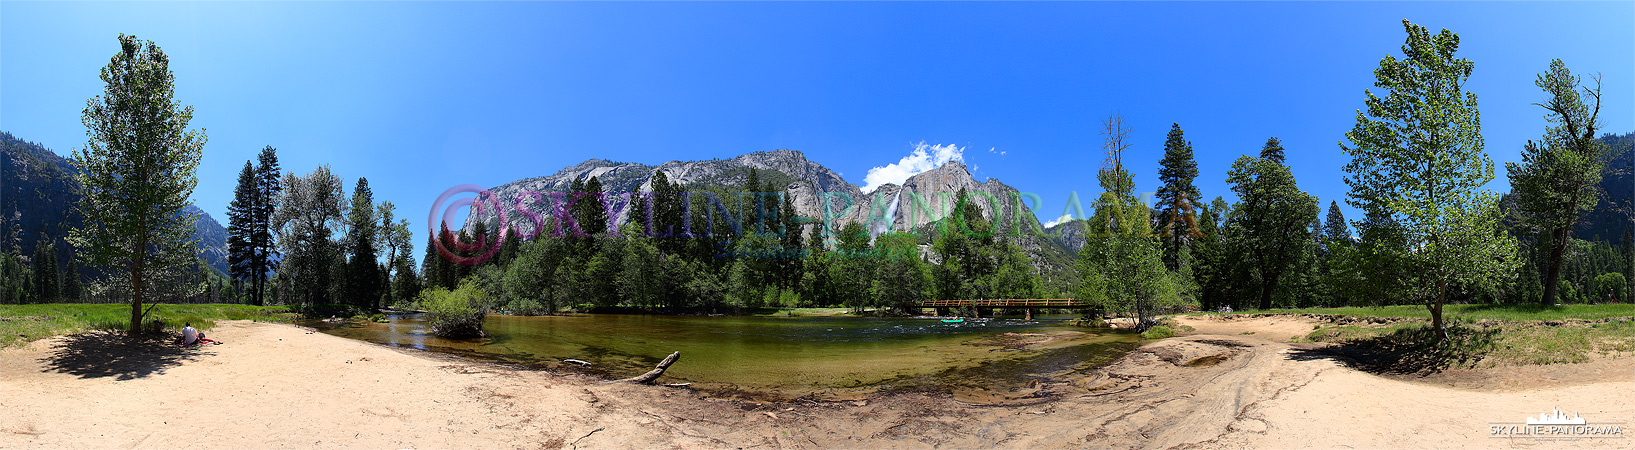 Yosemite Panorama (p_00553)